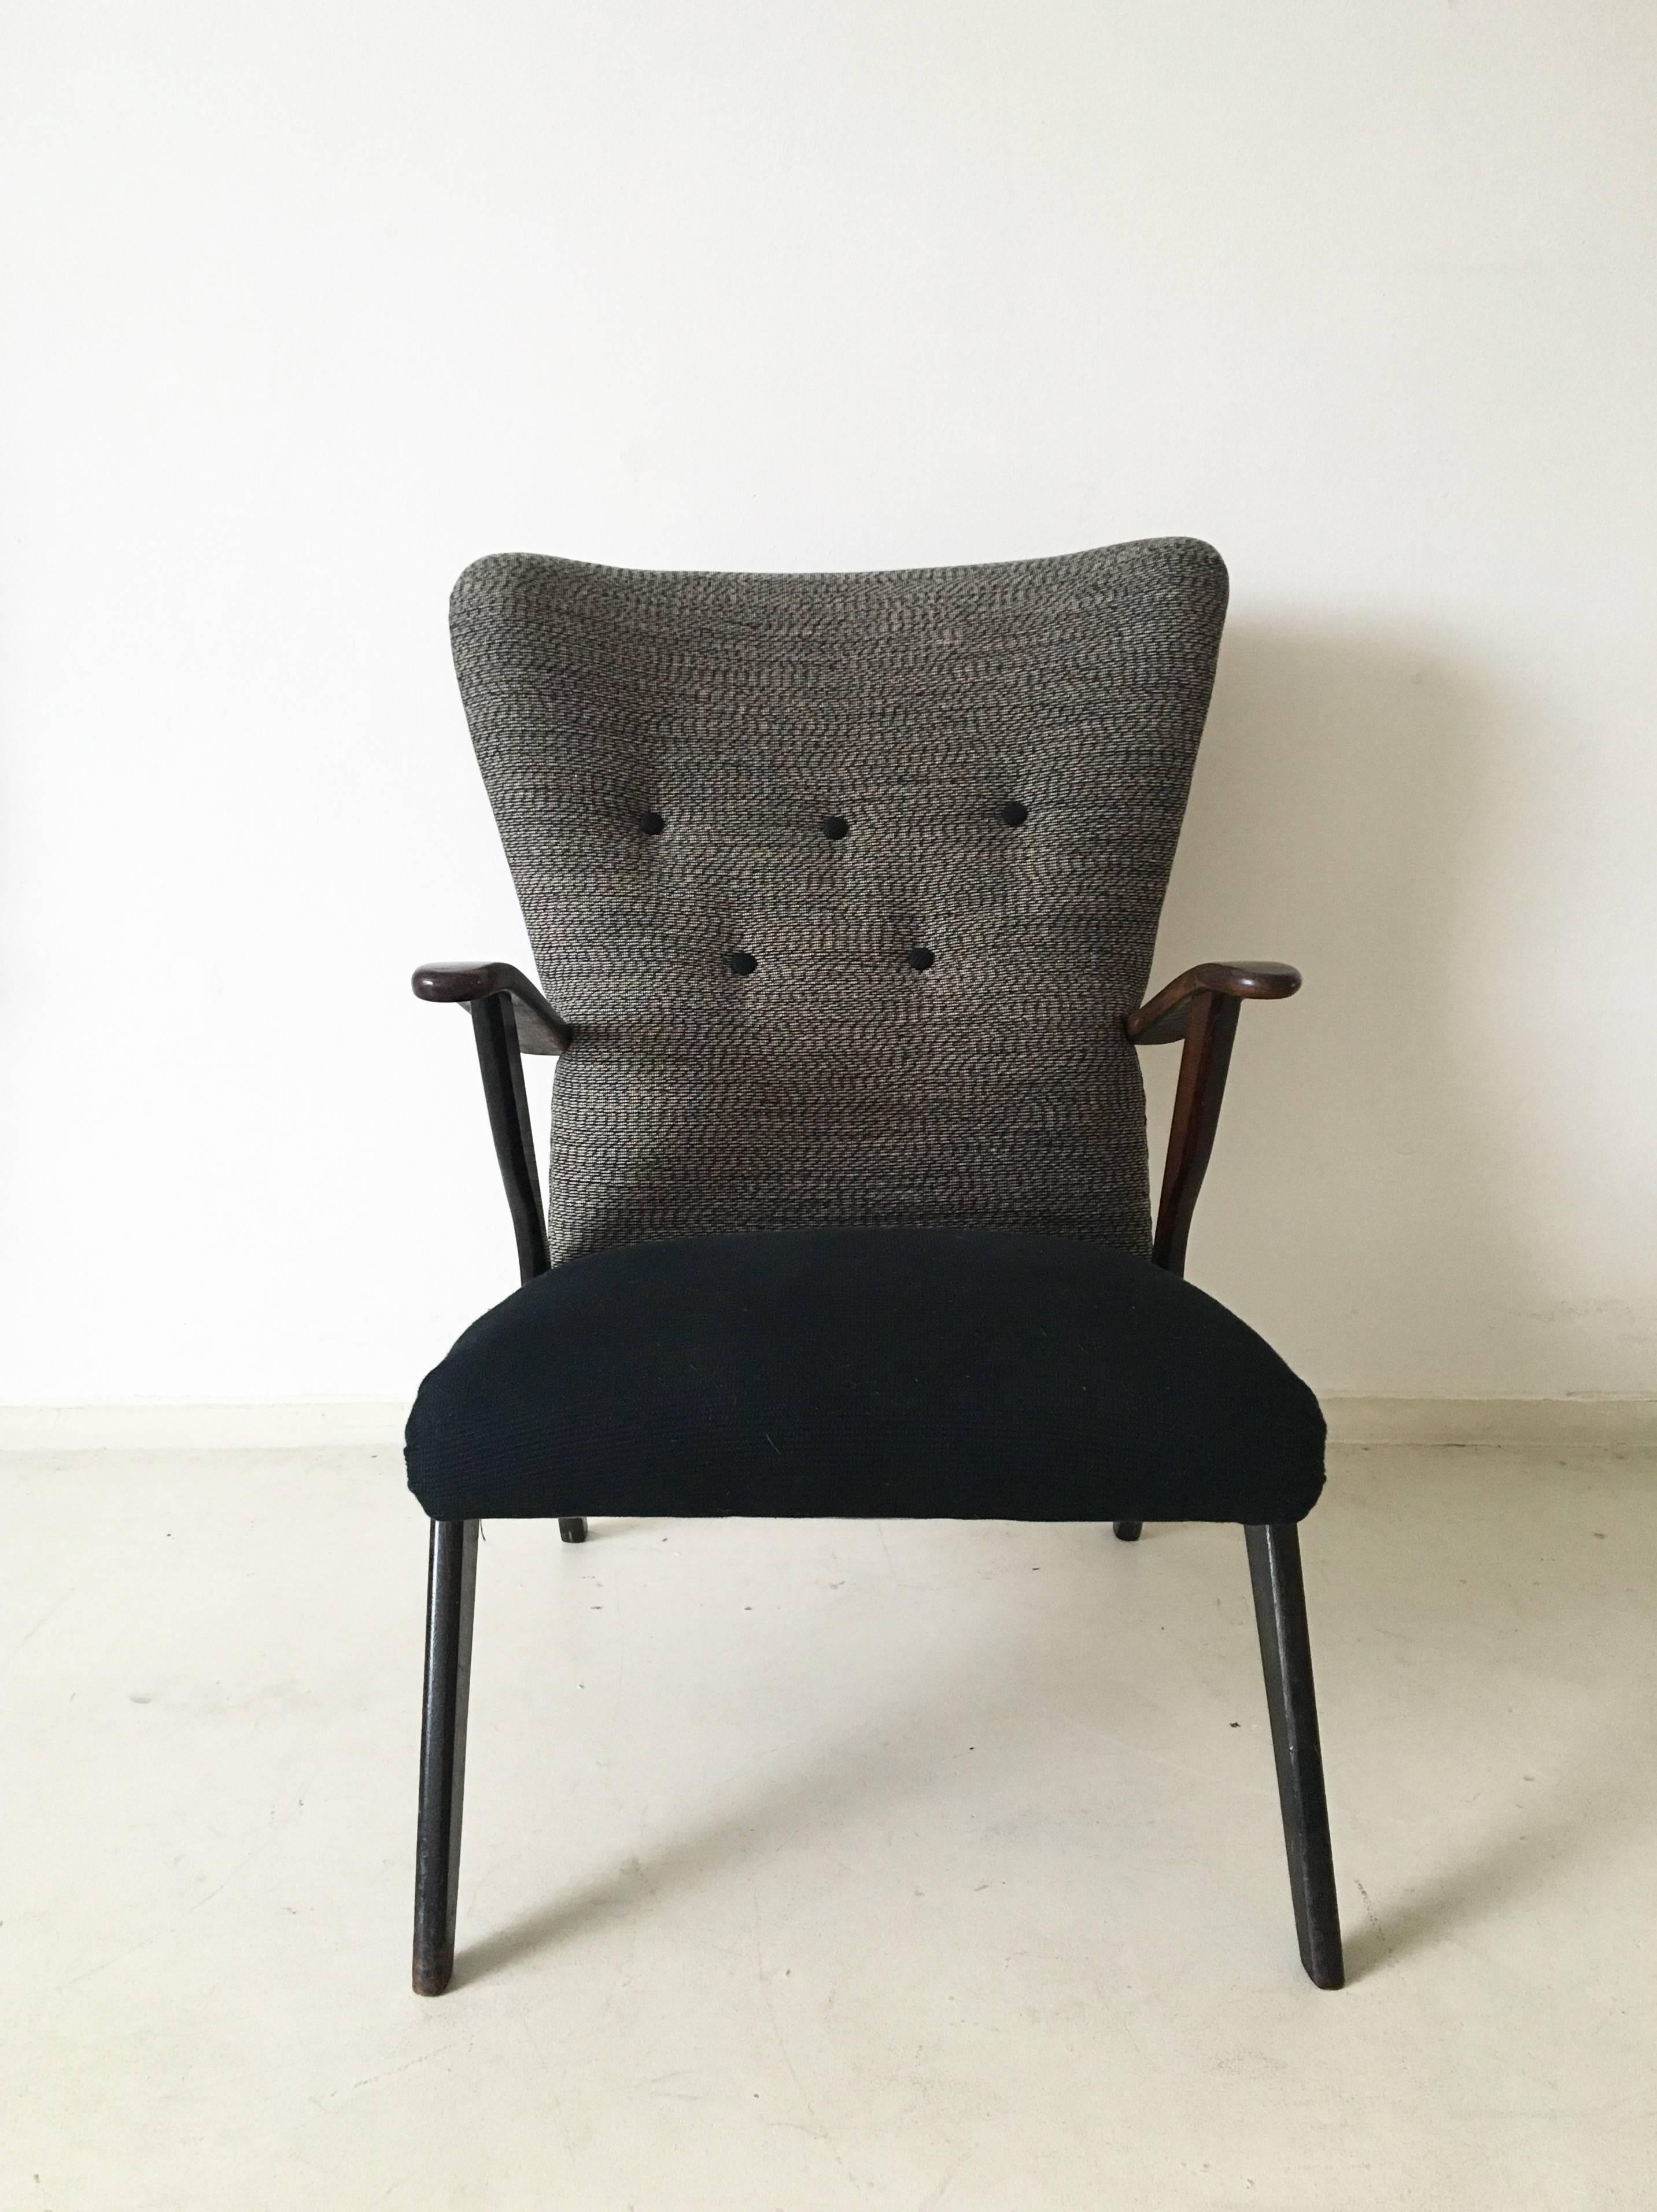 Wunderschöner, neu gepolsterter Ohrensessel im Stil von Ercol. Dieser Sessel gehört zu dem Dreisitzer-Sofa, das wir ebenfalls auf Lager haben. Es ist in gutem Zustand mit einigen Alters- und Gebrauchsspuren (sehr kleine Kratzer und Risse am Rahmen).